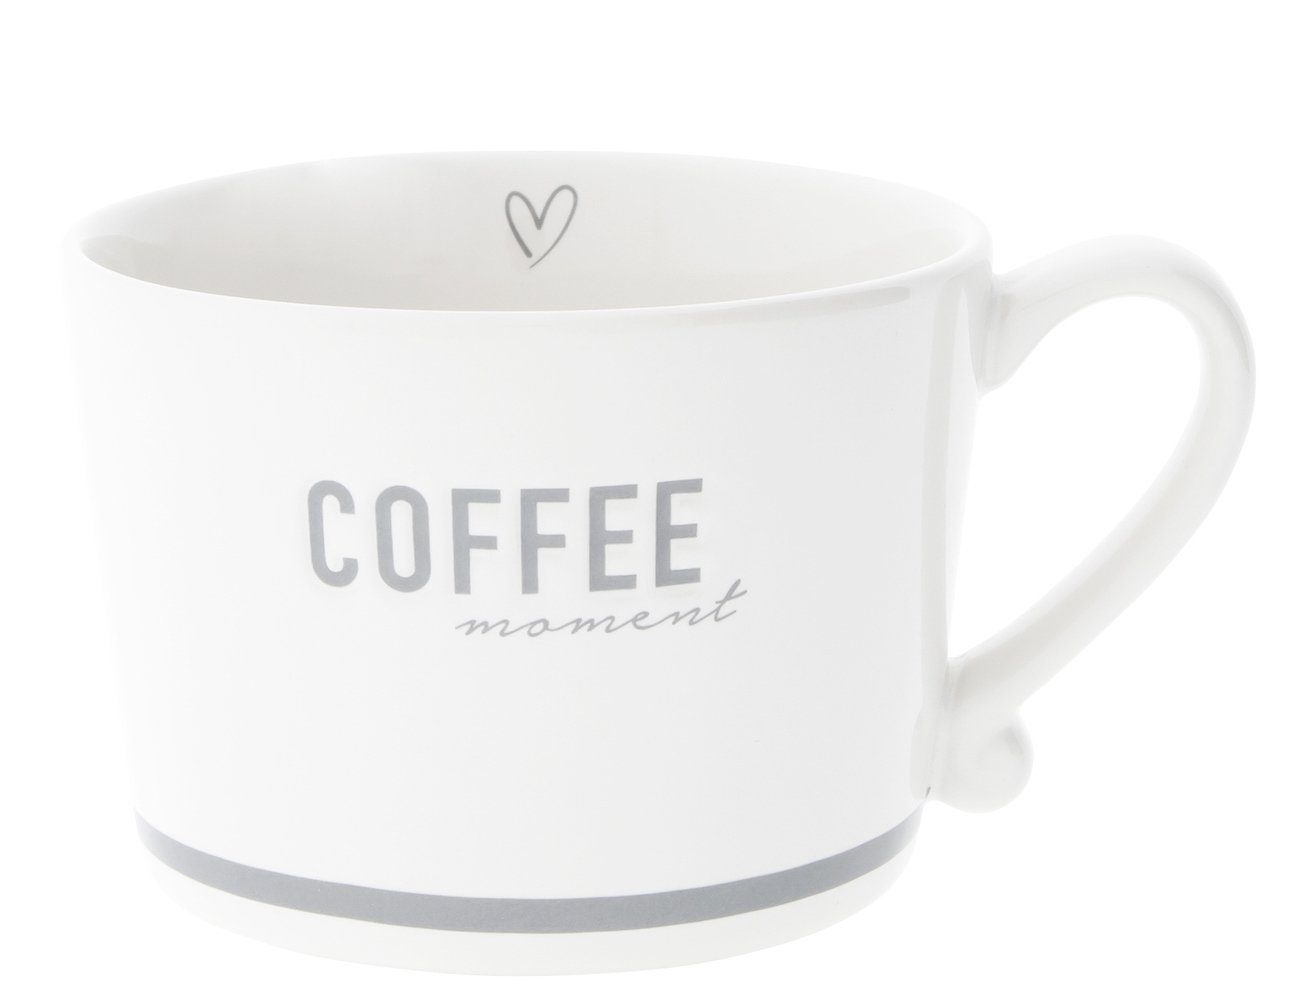 Bastion Collections Tasse Tasse mit Henkel COFFEE moment Keramik weiß grau, Keramik | Teeschalen